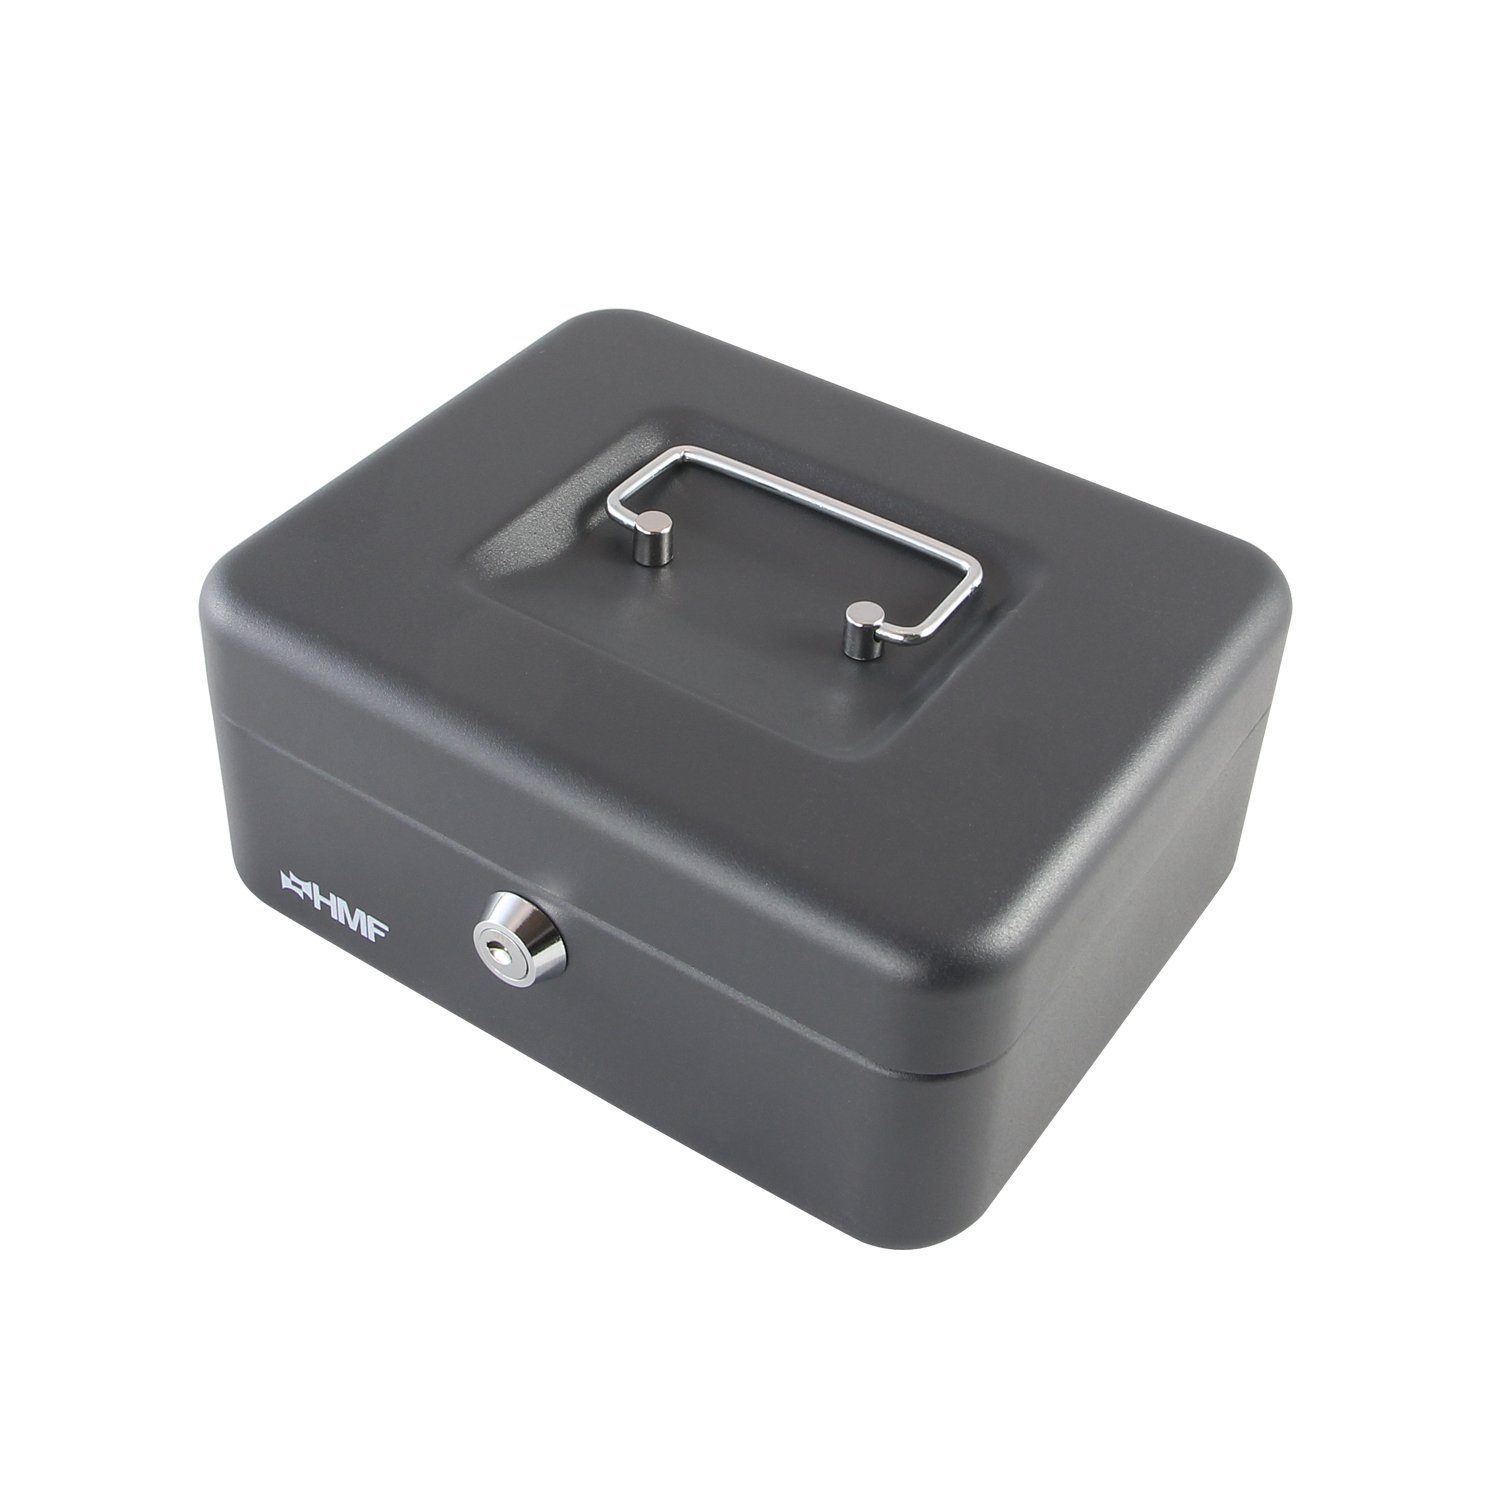 HMF mit mit Abschließbare cm 20x16x9,5 Schlüssel, schwarz Geldbox robuste Bargeldkasse Münzeinsatz, Geldkassette